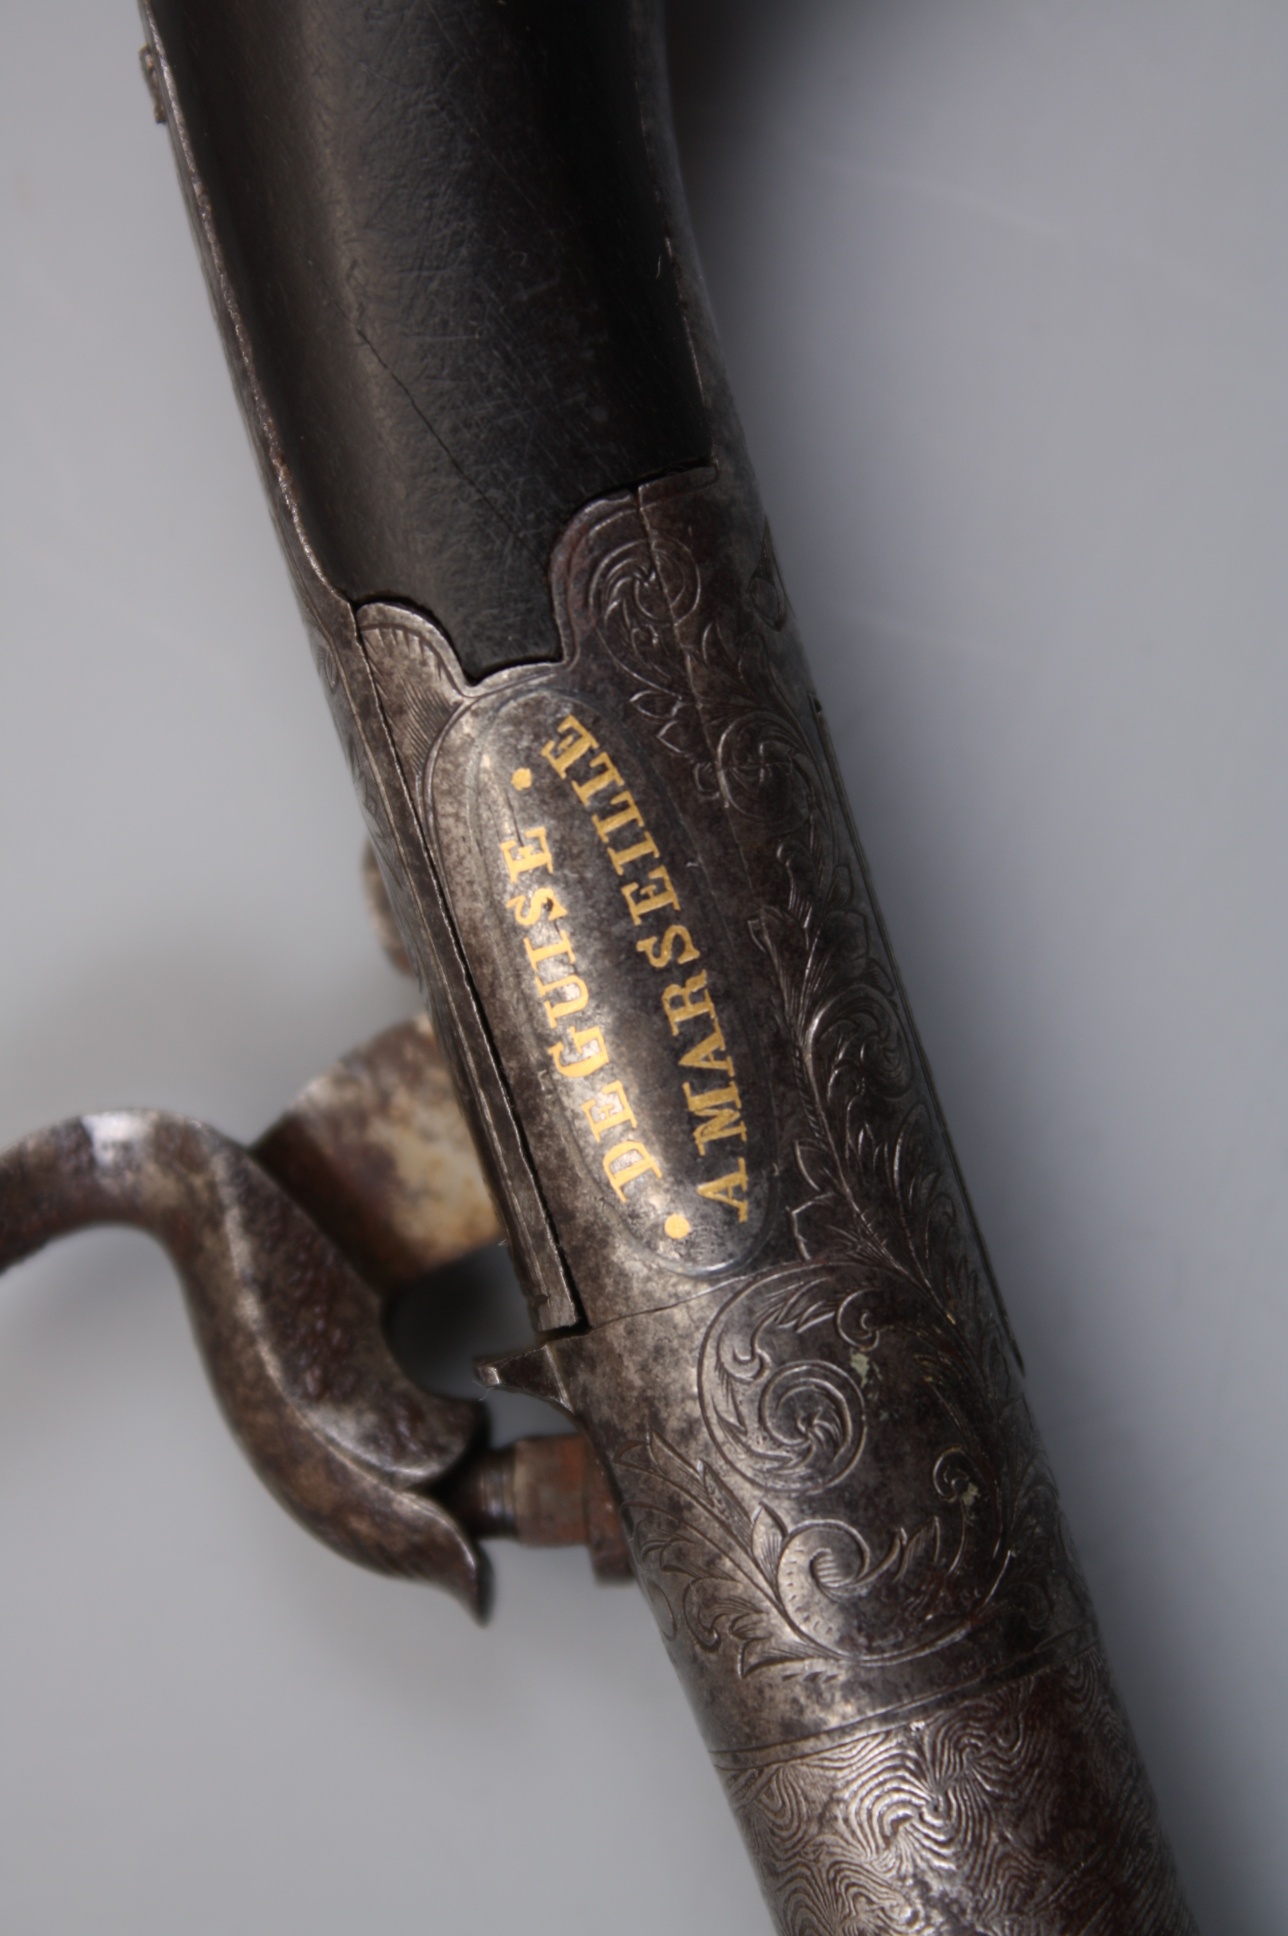 Роскошный капсюльный карманный пистолет сер. 19-го века, Франция.